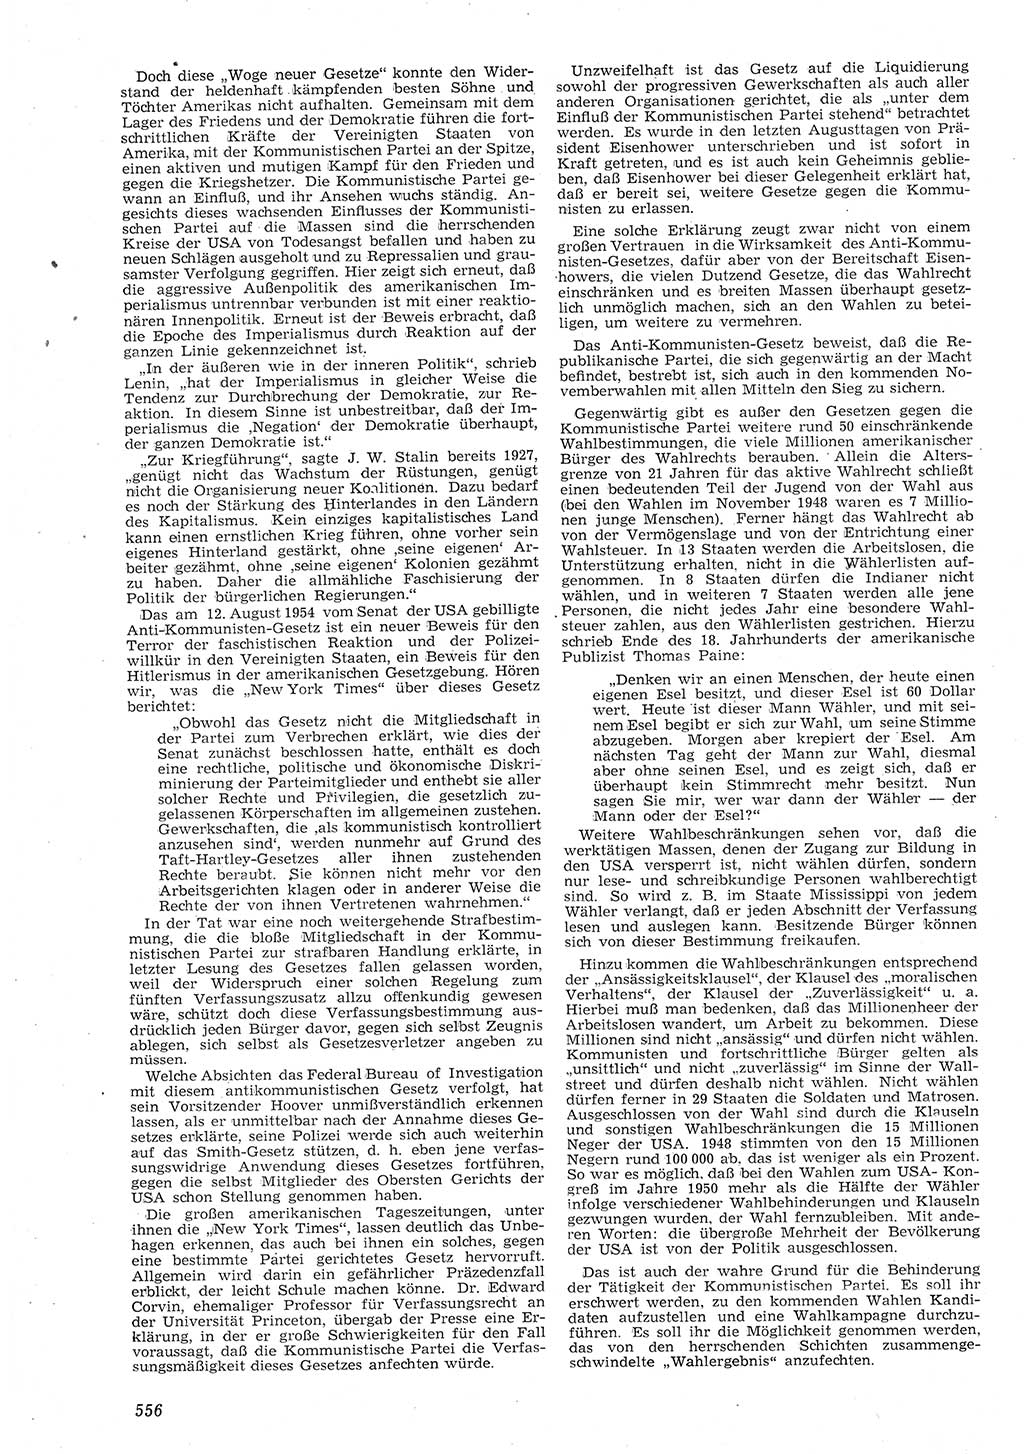 Neue Justiz (NJ), Zeitschrift für Recht und Rechtswissenschaft [Deutsche Demokratische Republik (DDR)], 8. Jahrgang 1954, Seite 556 (NJ DDR 1954, S. 556)